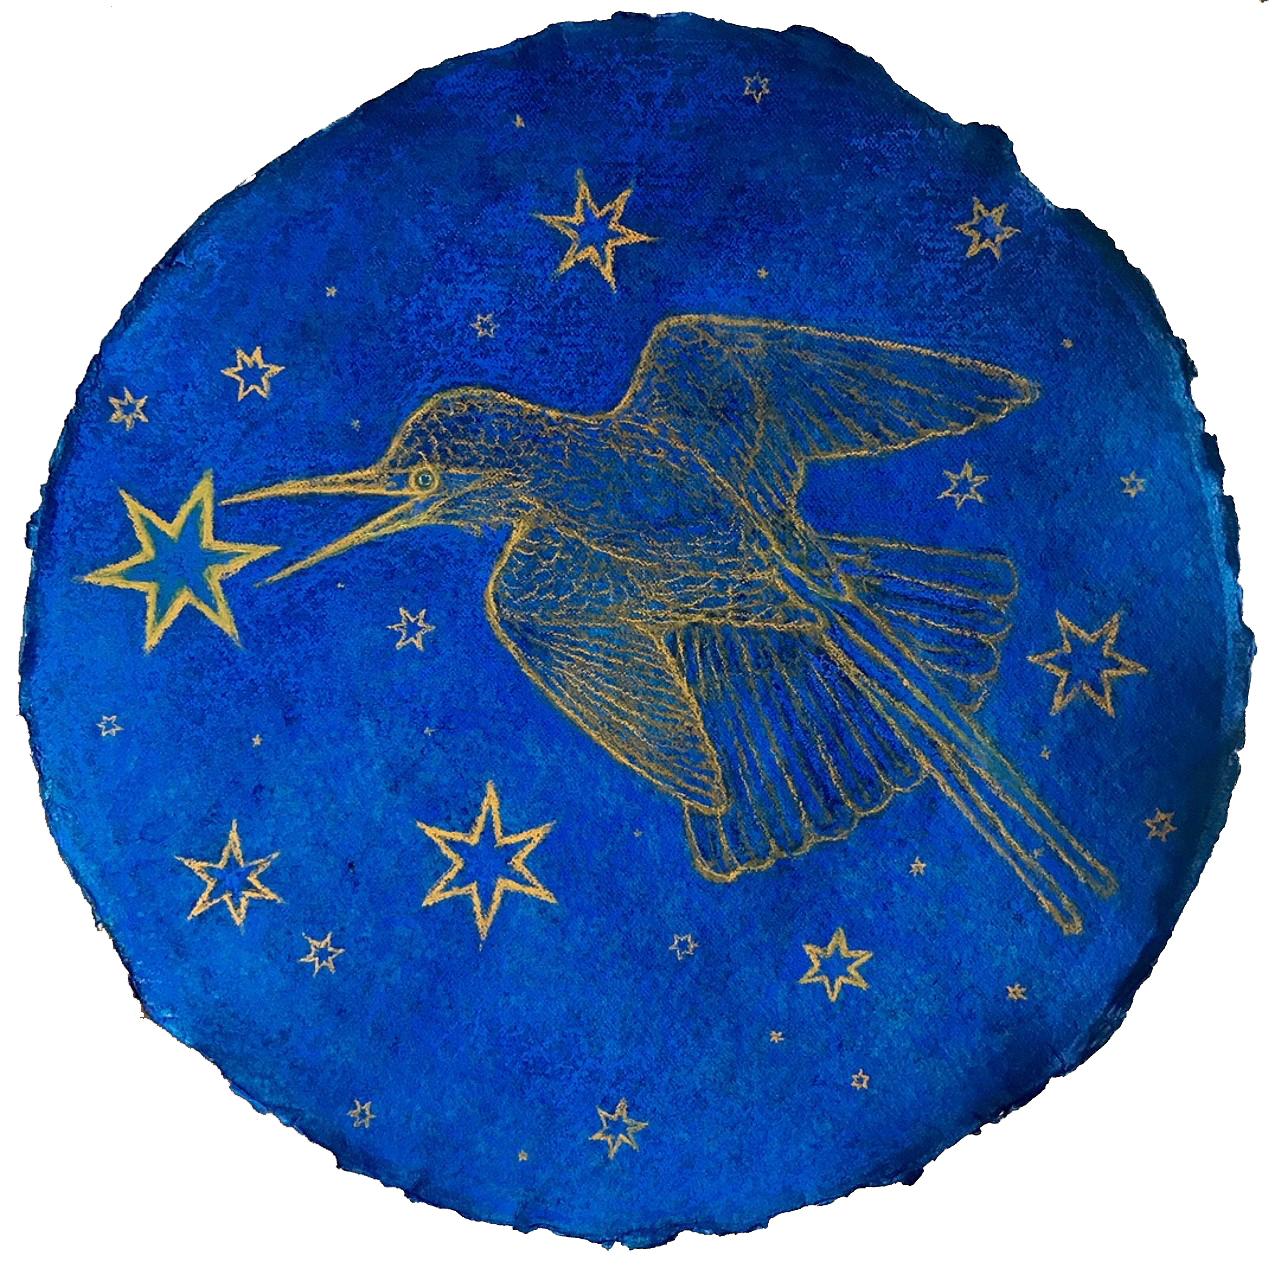 Hummingbird Augury: Kobaltblaue pastellfarbene Zeichnung auf handgeschöpftem Papier mit goldenen Sternen